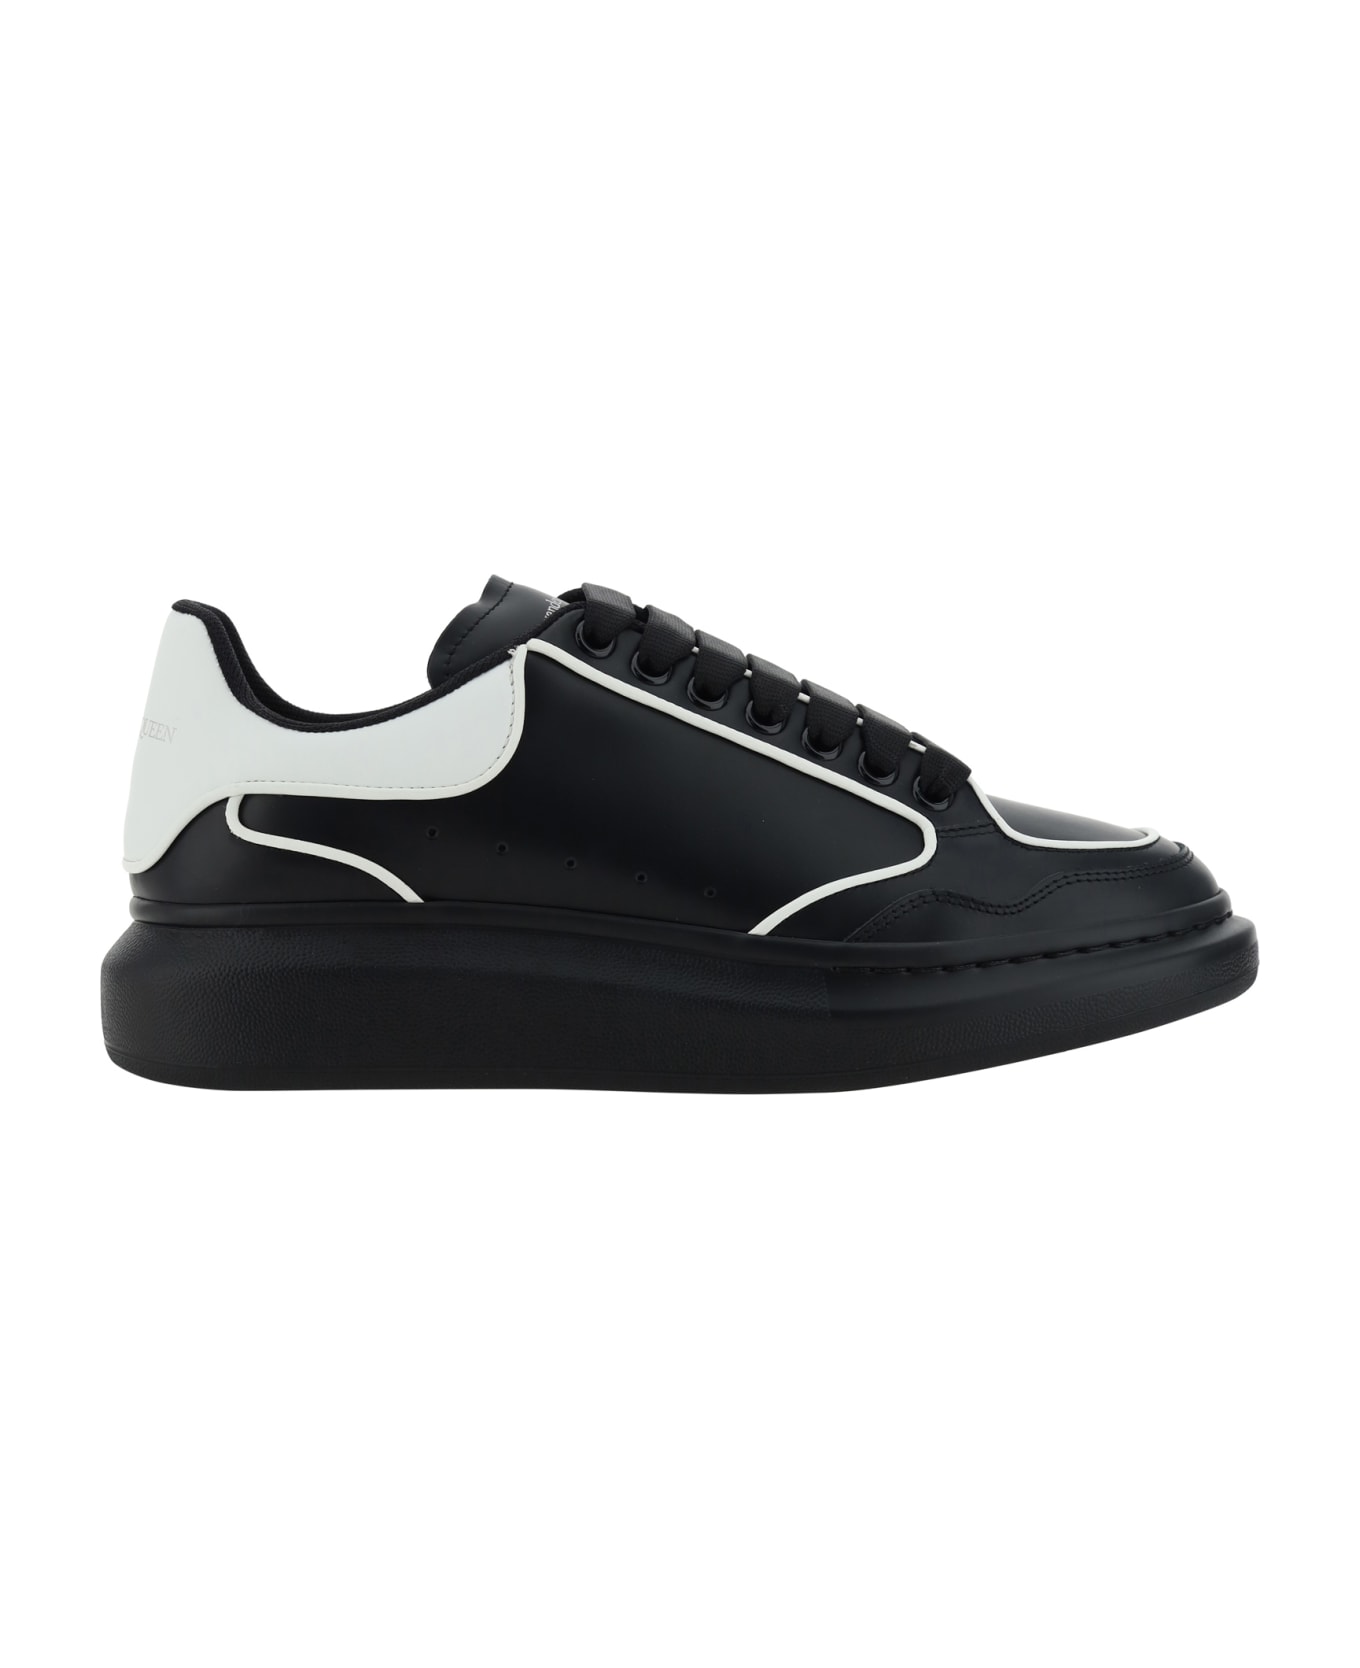 Alexander McQueen Sneakers - Black/white/white スニーカー